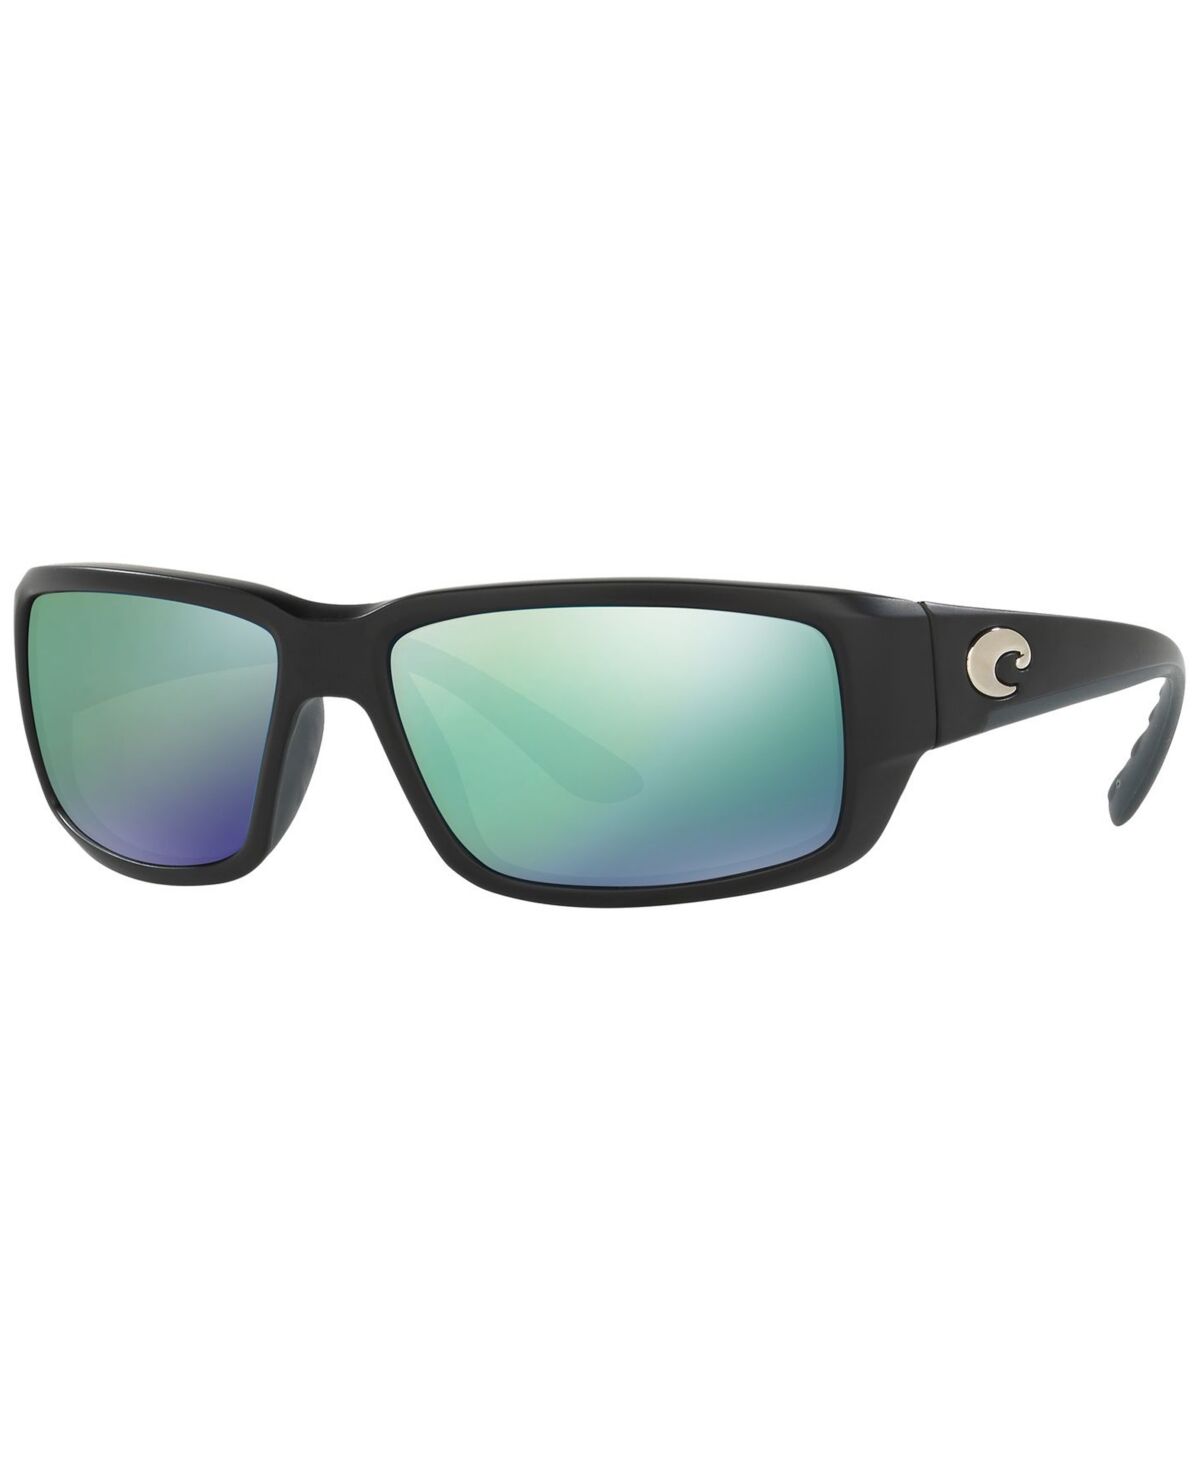 Costa Del Mar Men's Polarized Sunglasses, Fantail - BLACK/ BLUE MIRROR